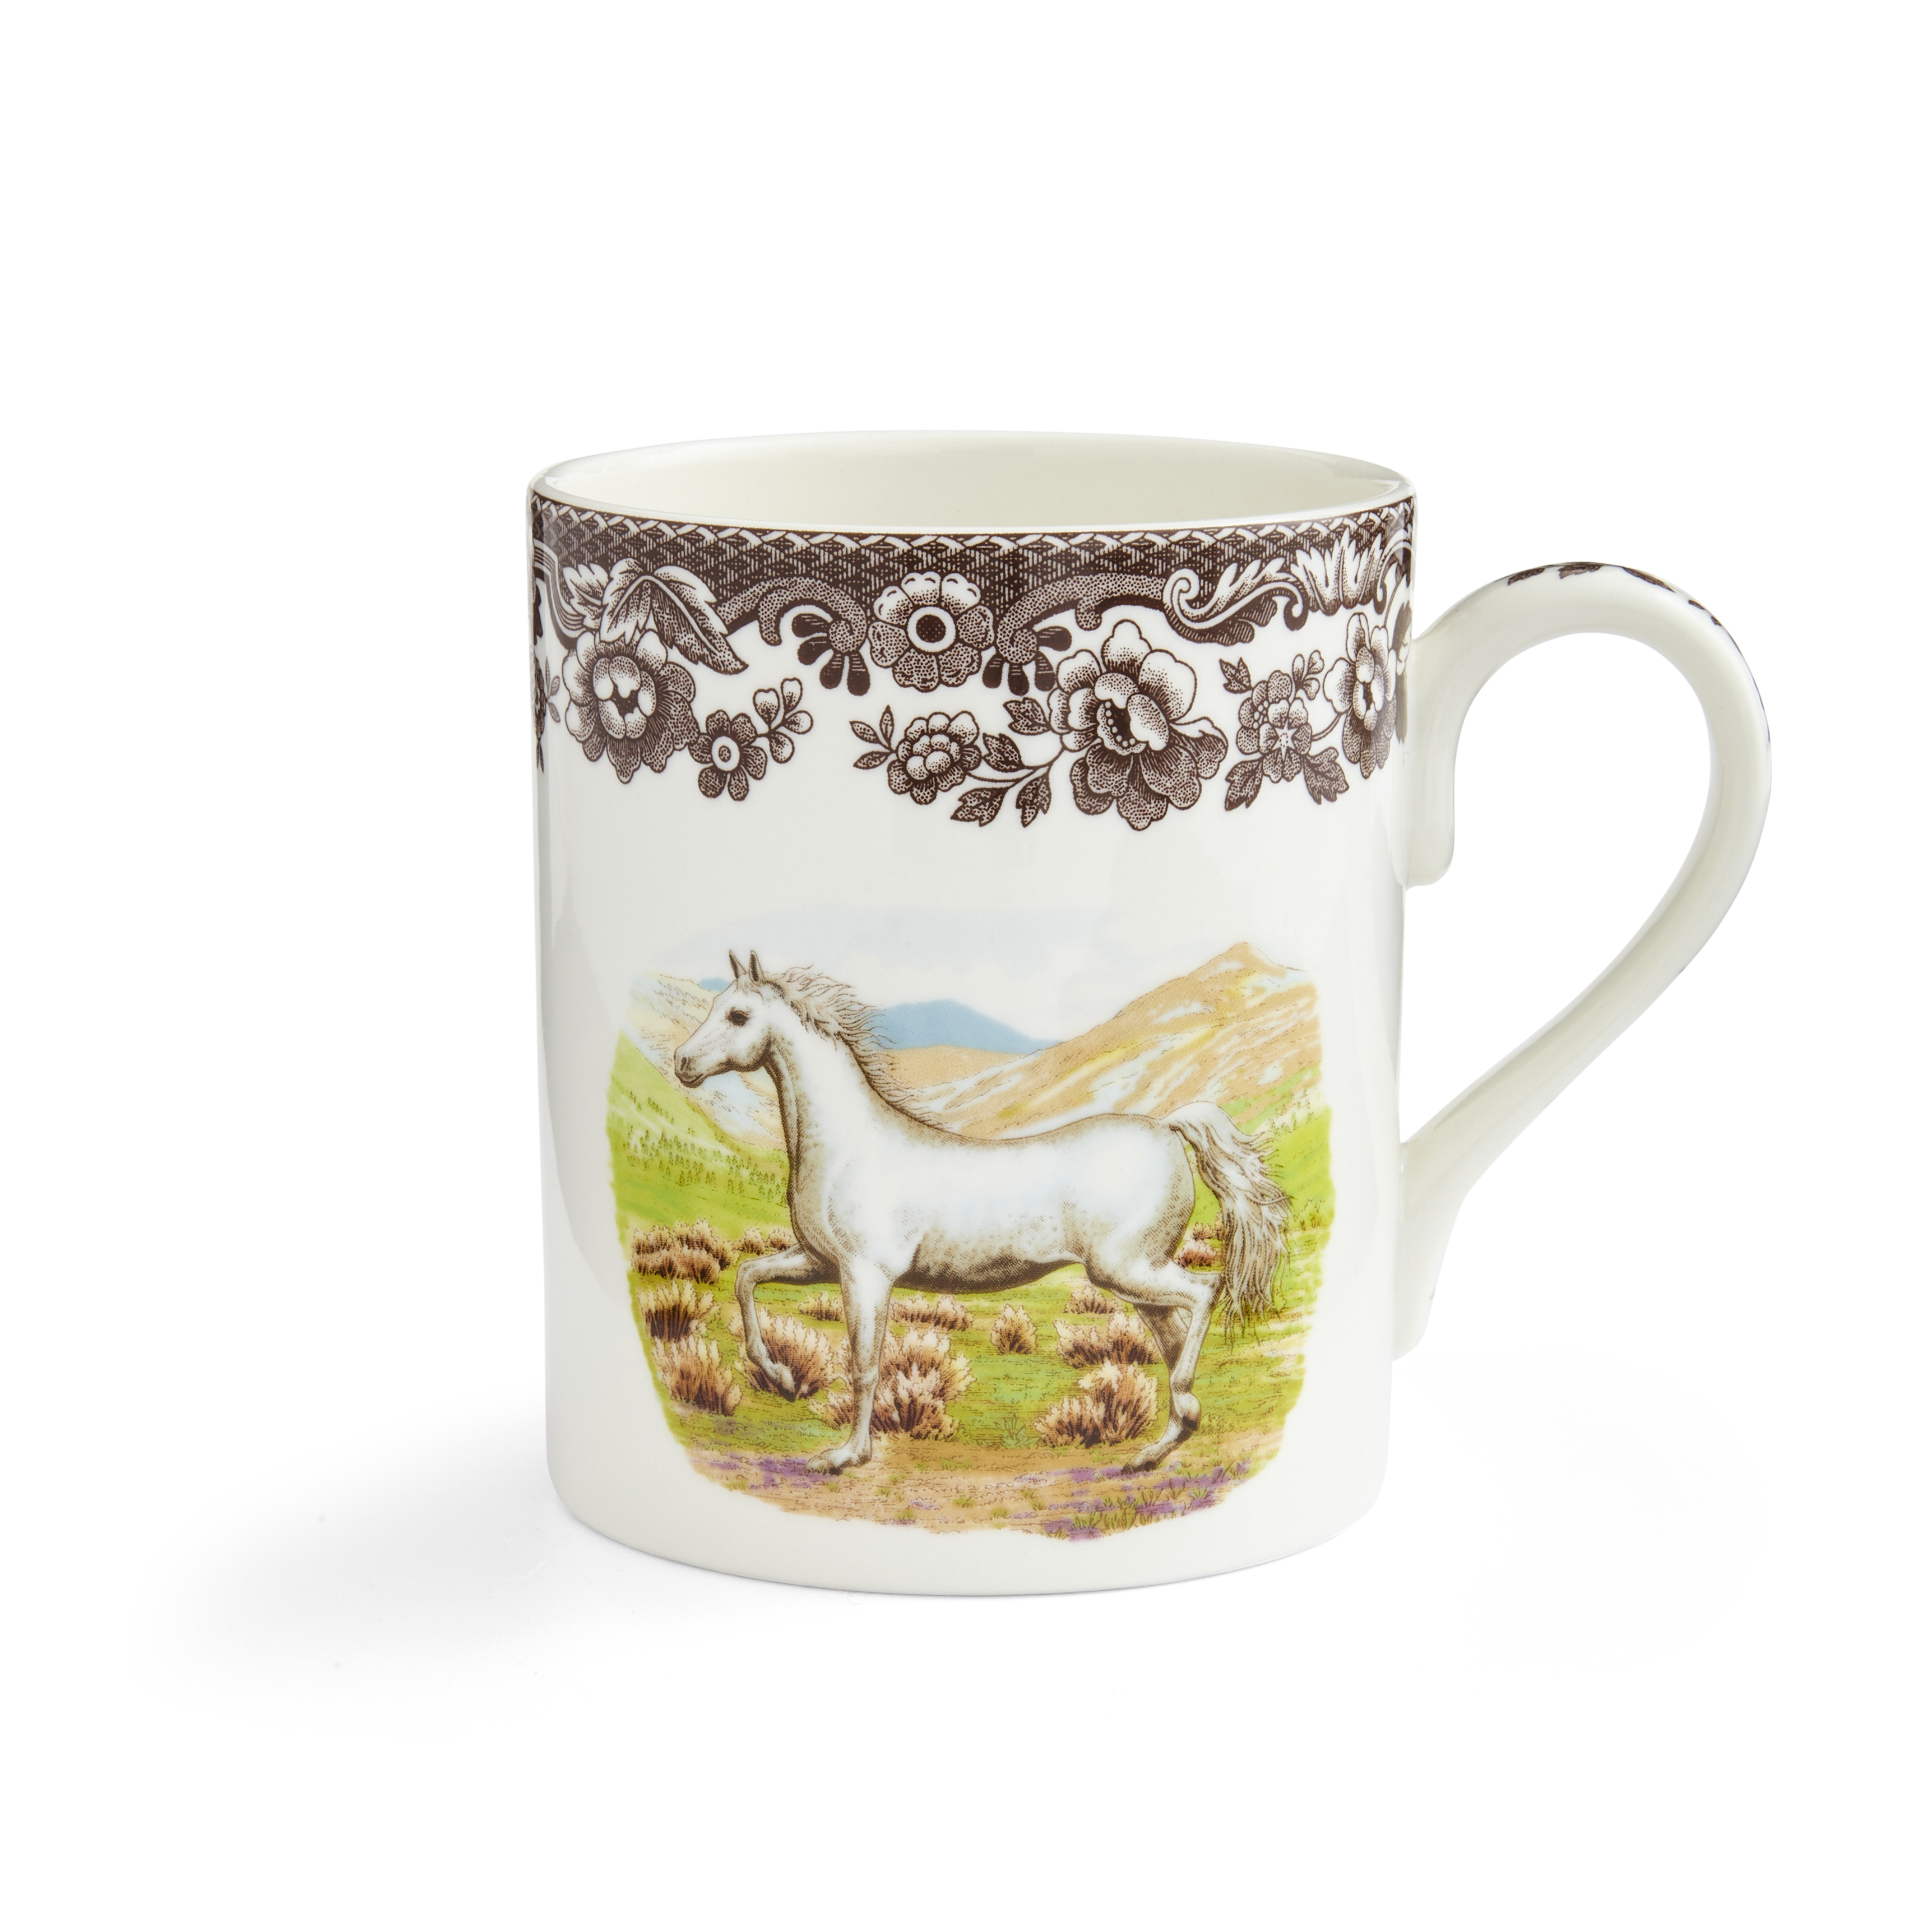 Woodland 16 fl.oz. Mug, Arabian Horse image number null